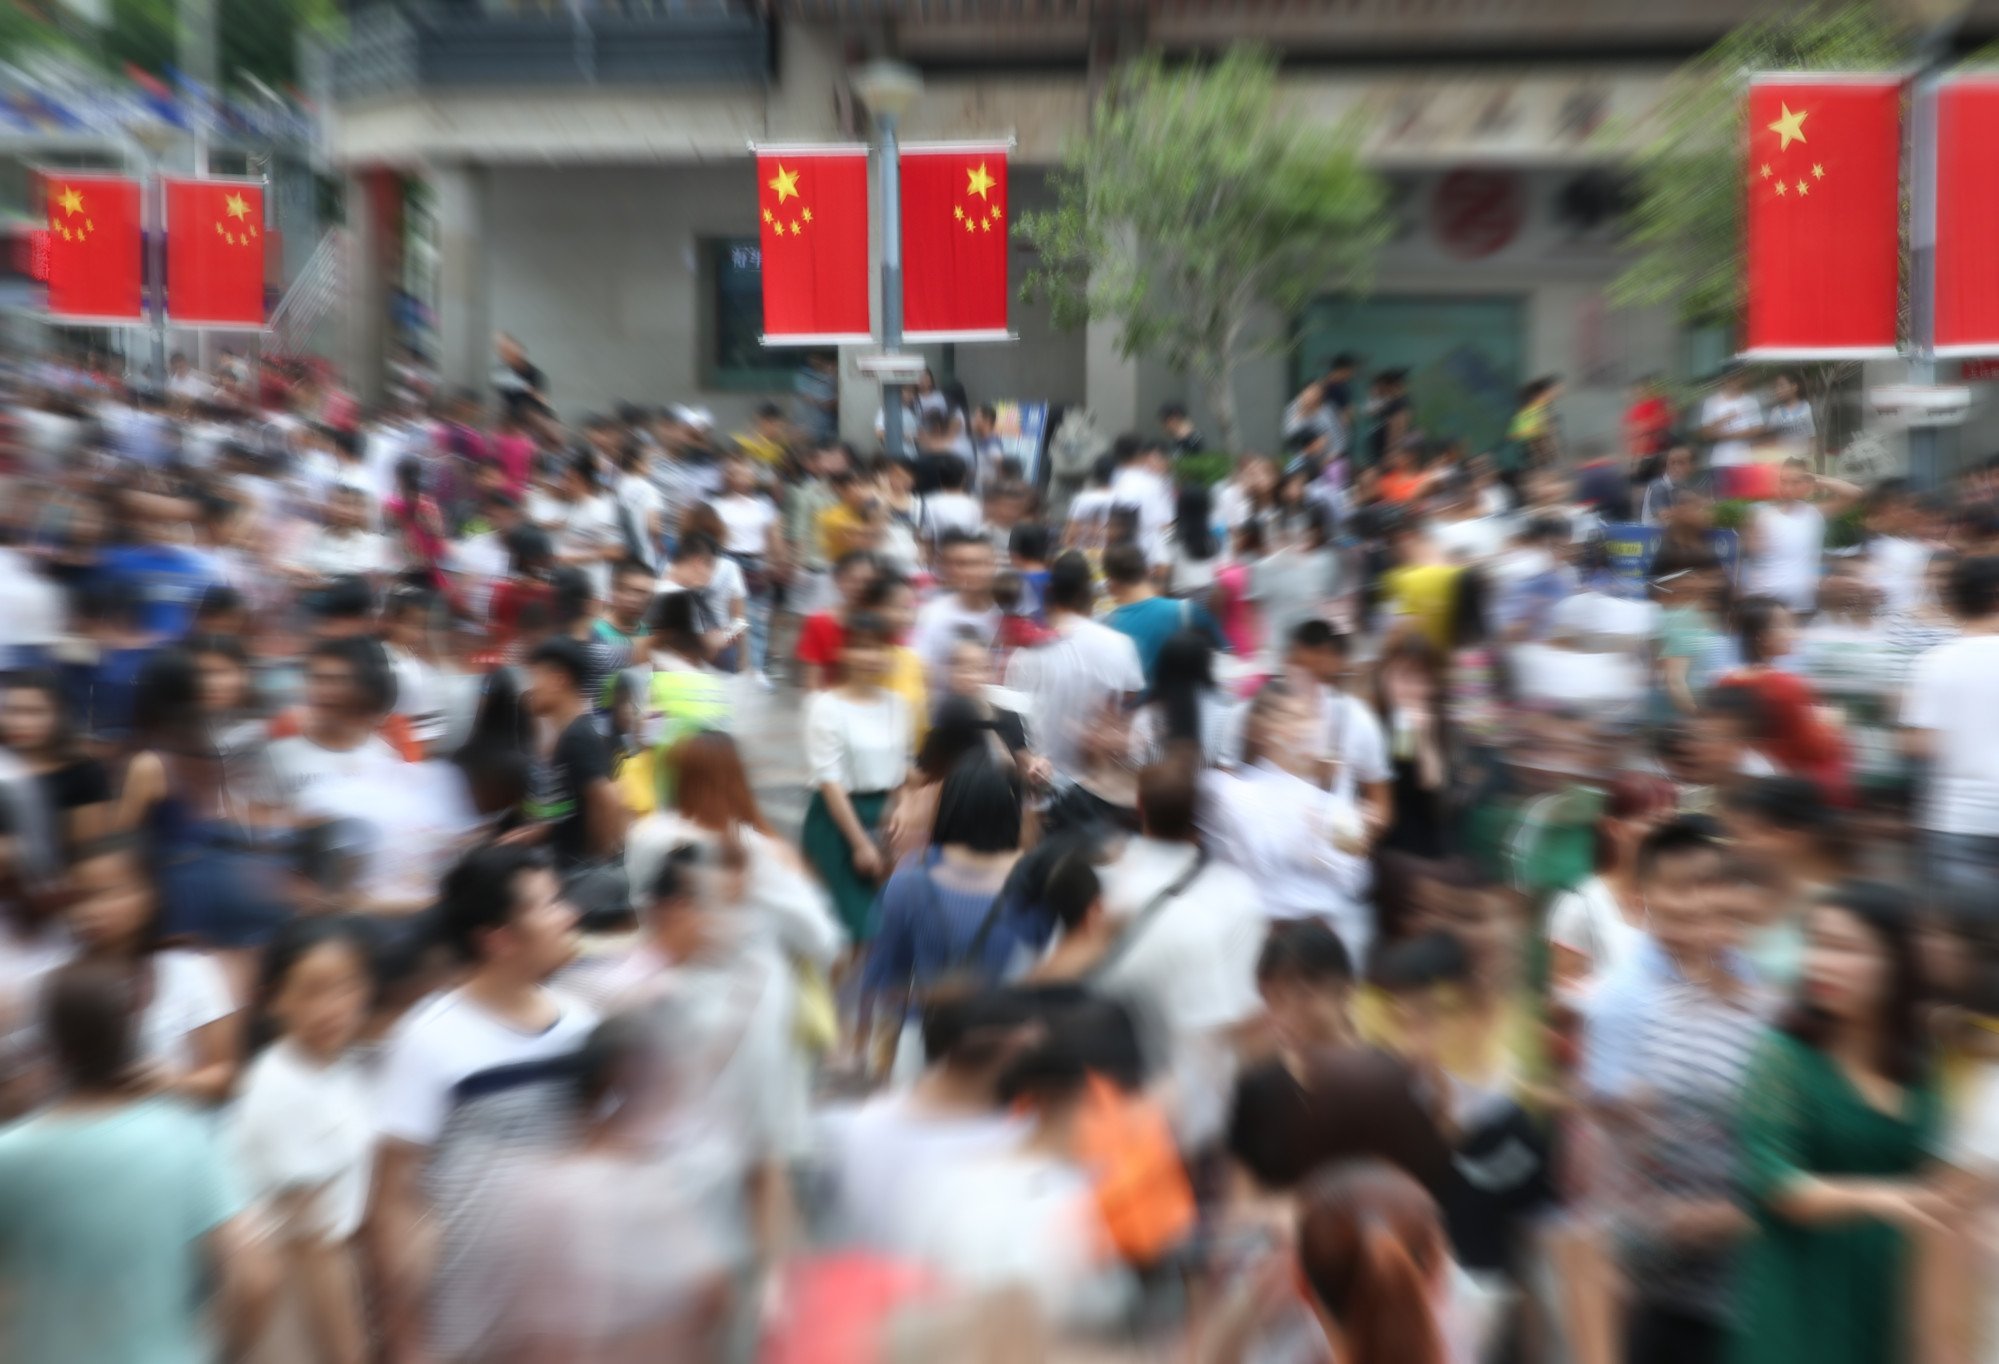 چین کی جاب مارکیٹ میں بڑھتی ہوئی شدید مسابقت نے بہت سے نوجوانوں کو روزگار کی متبادل شکلیں اختیار کرتے دیکھا ہے۔ فوٹو: شٹر اسٹاک